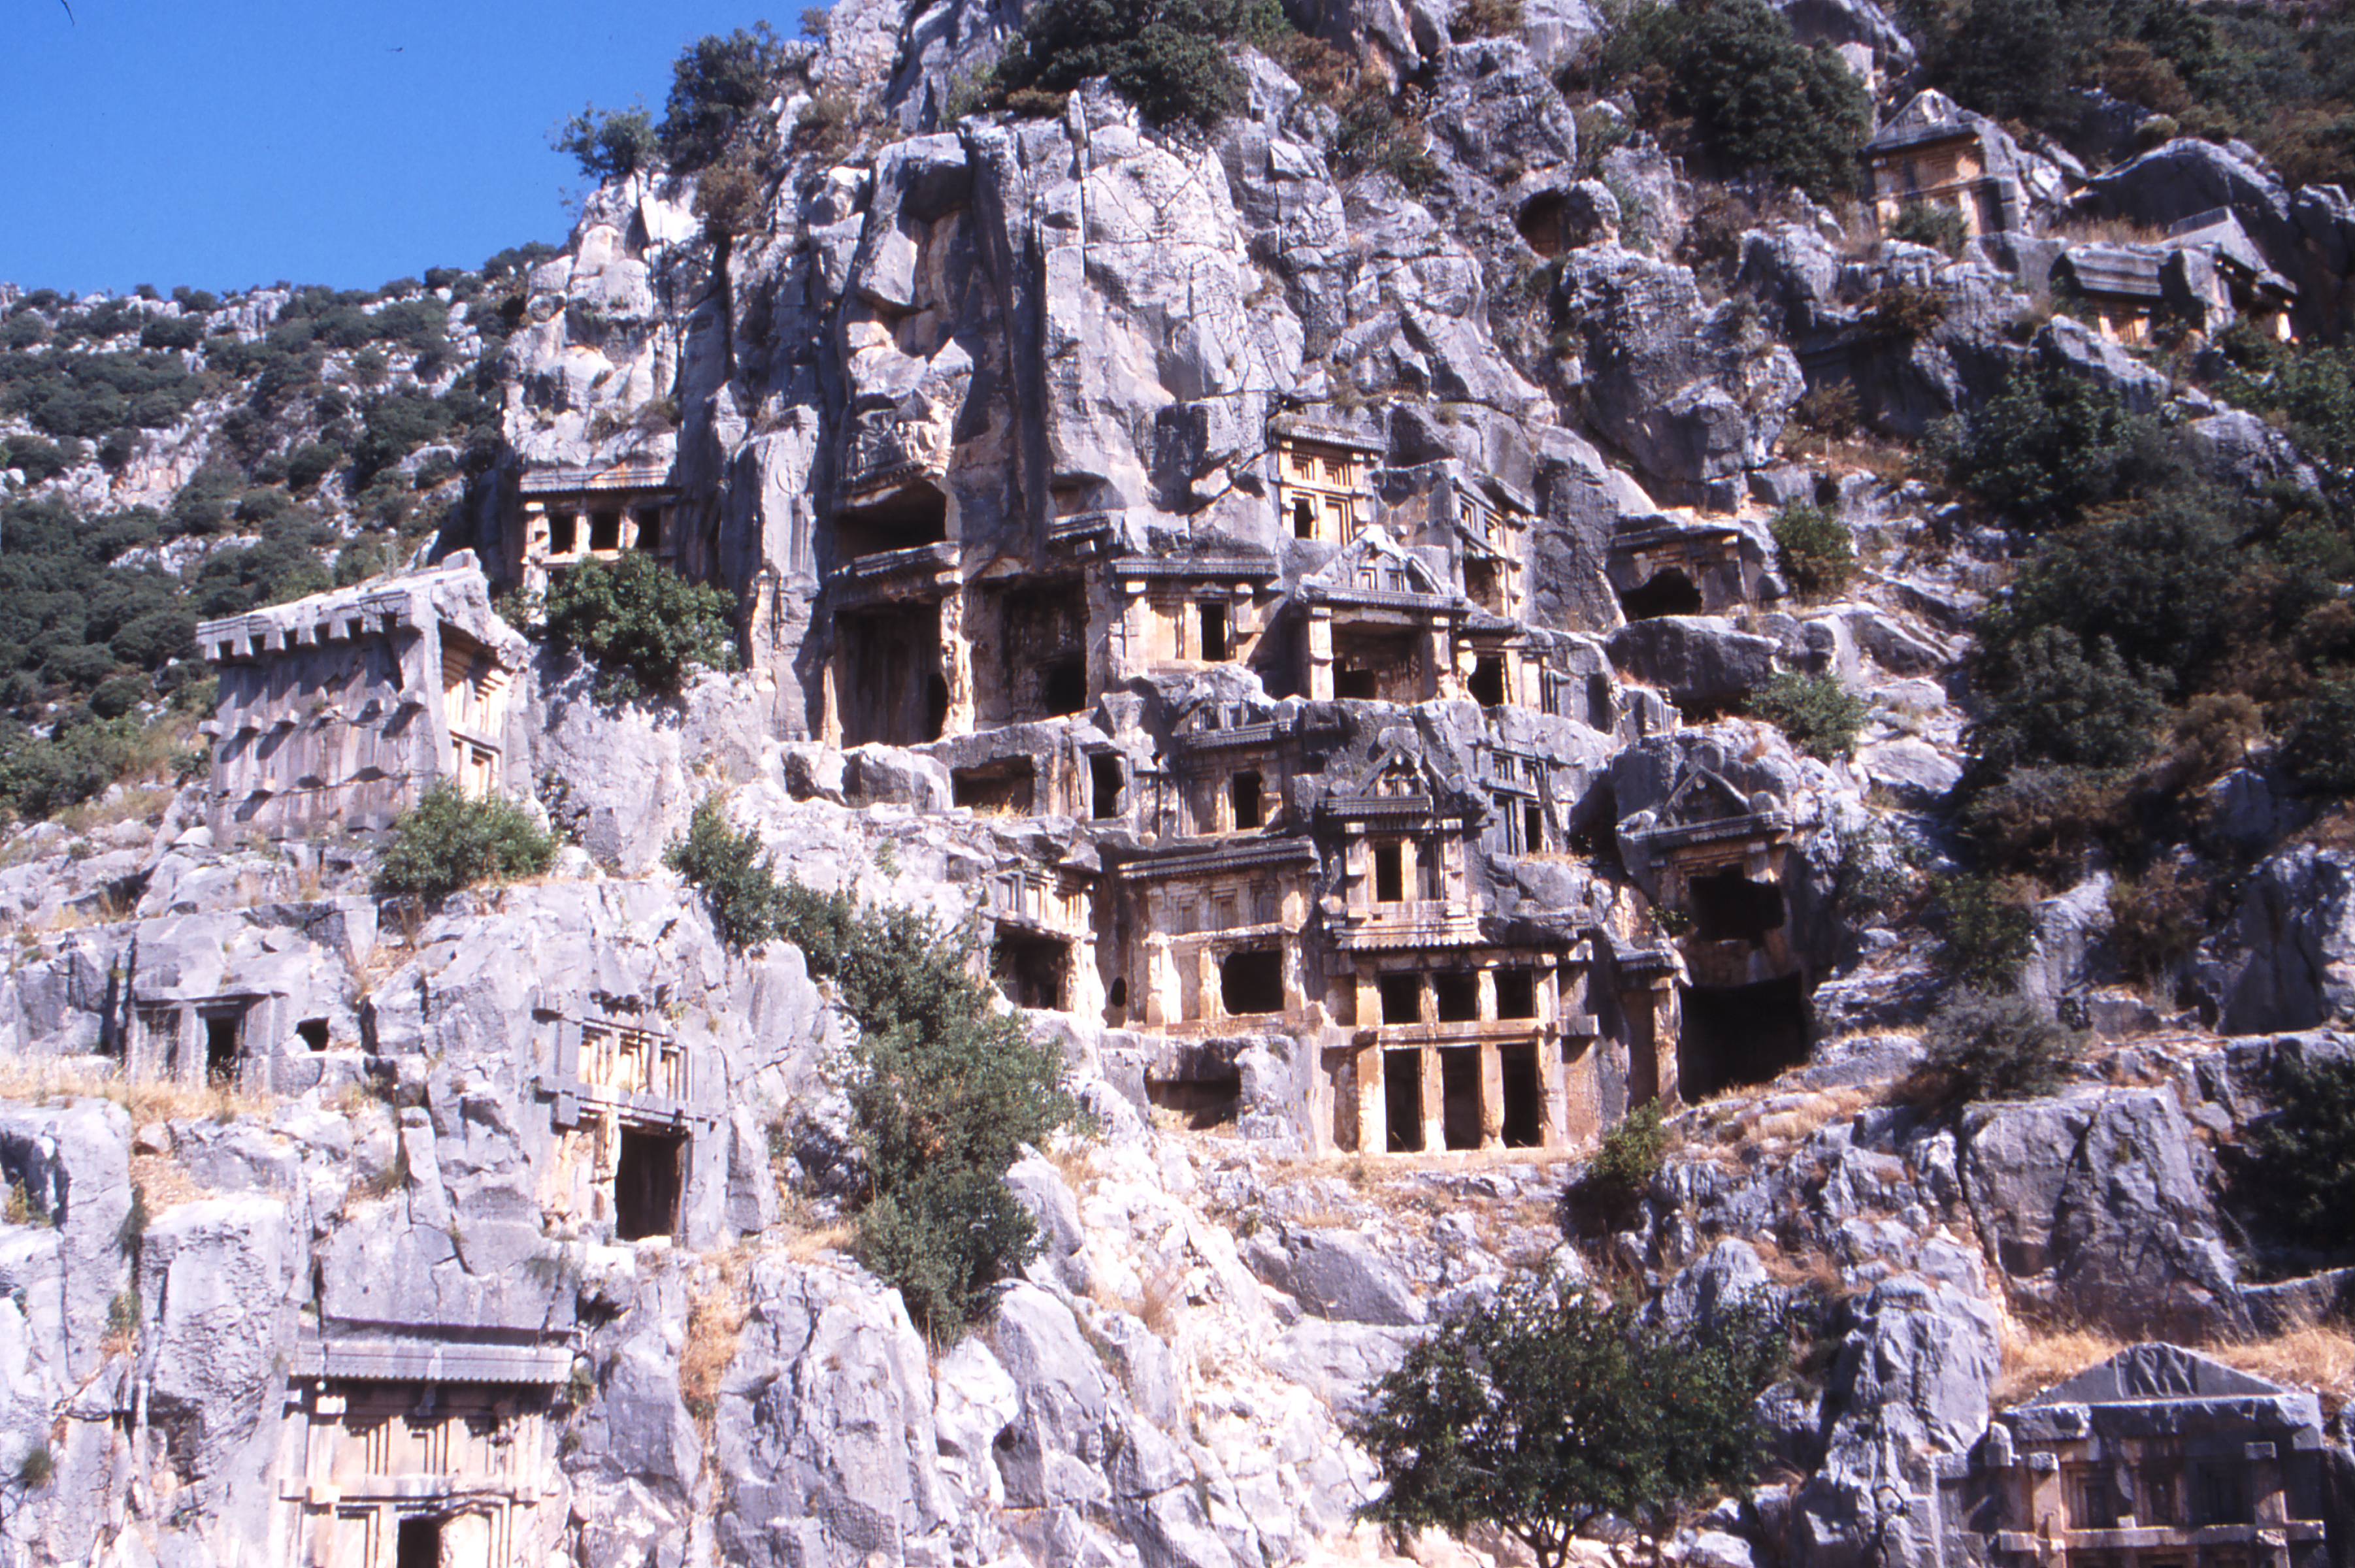 Lycian tombs